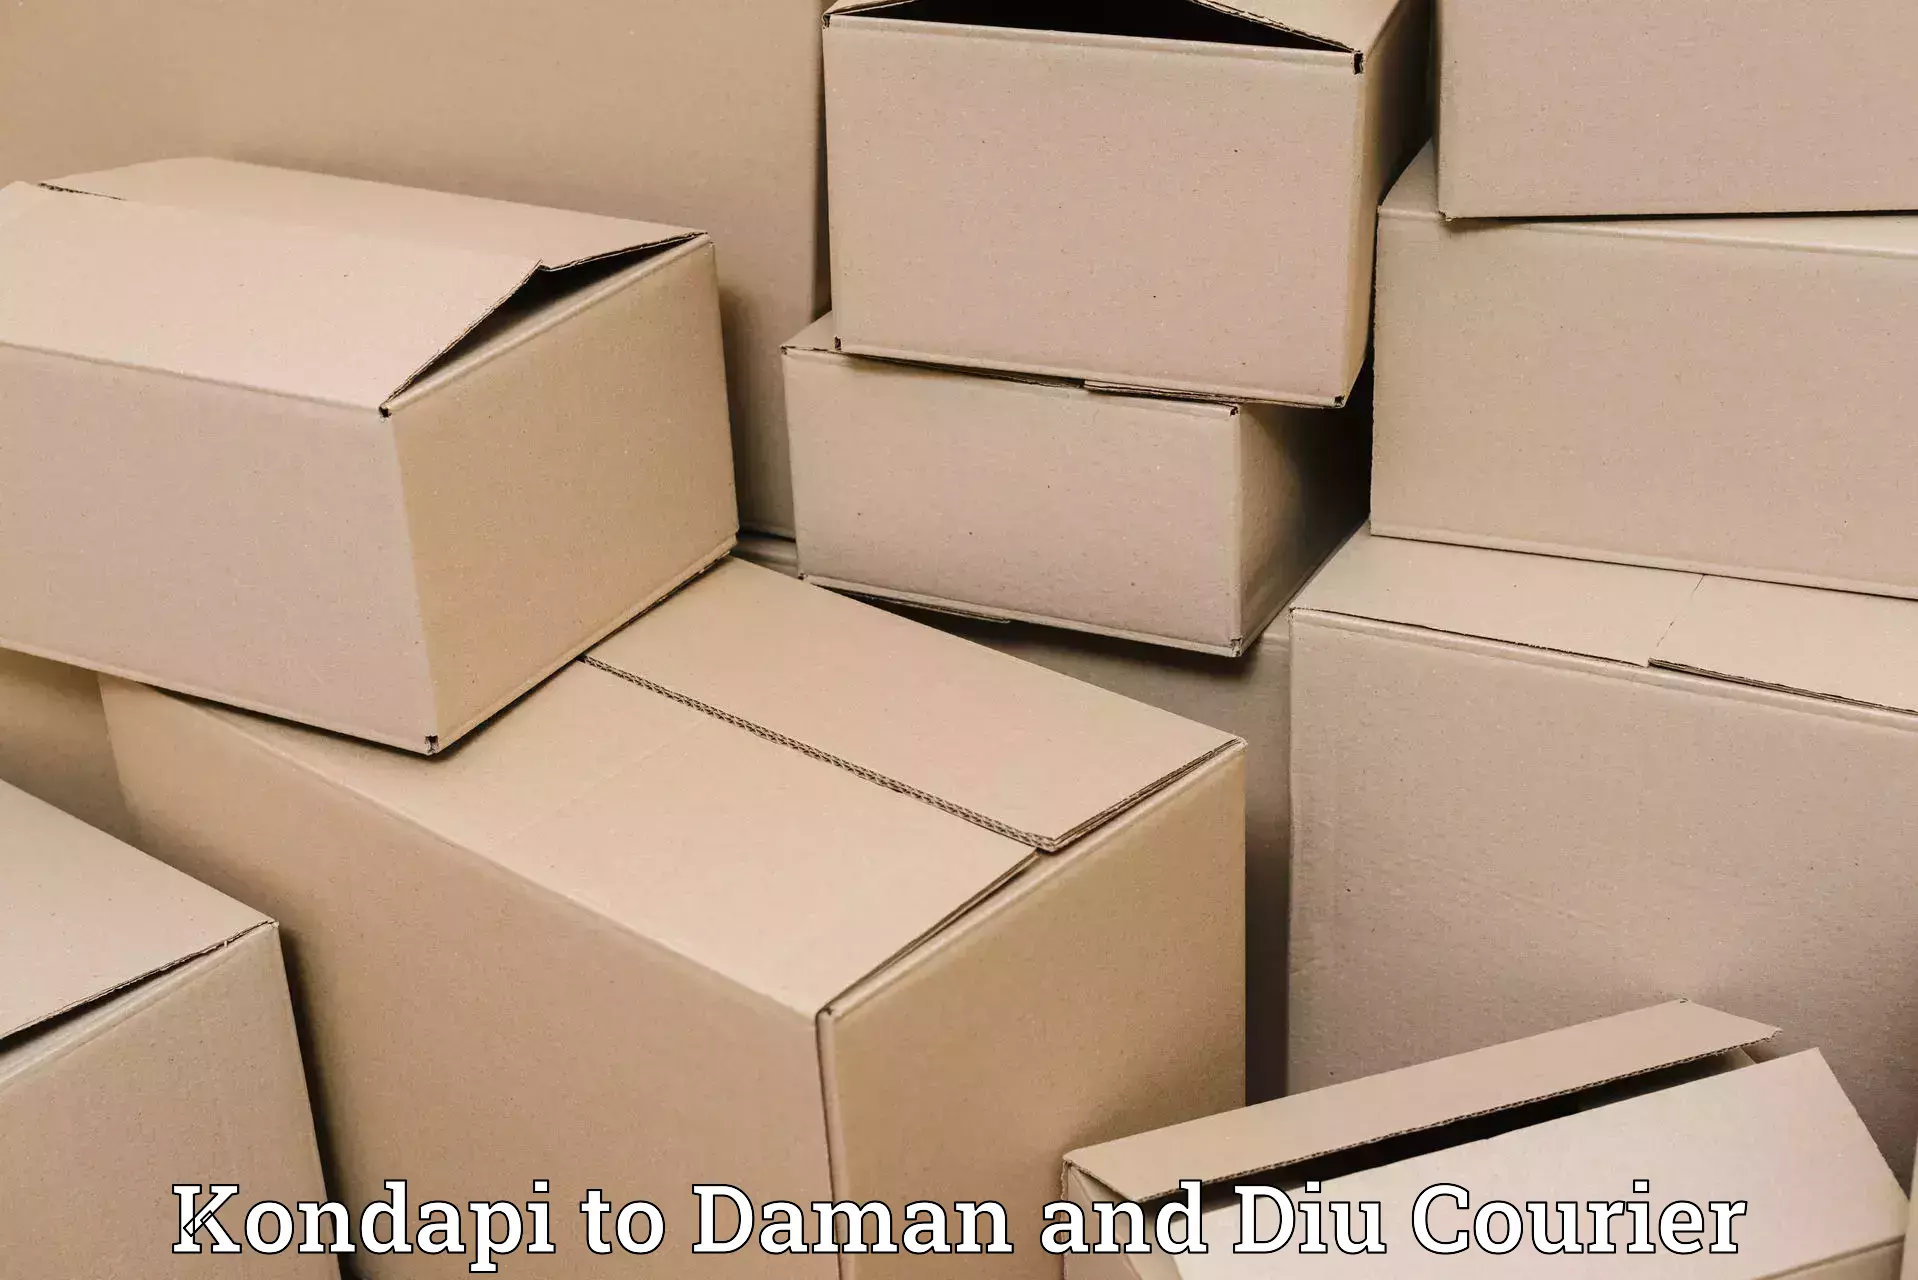 Efficient freight service Kondapi to Daman and Diu